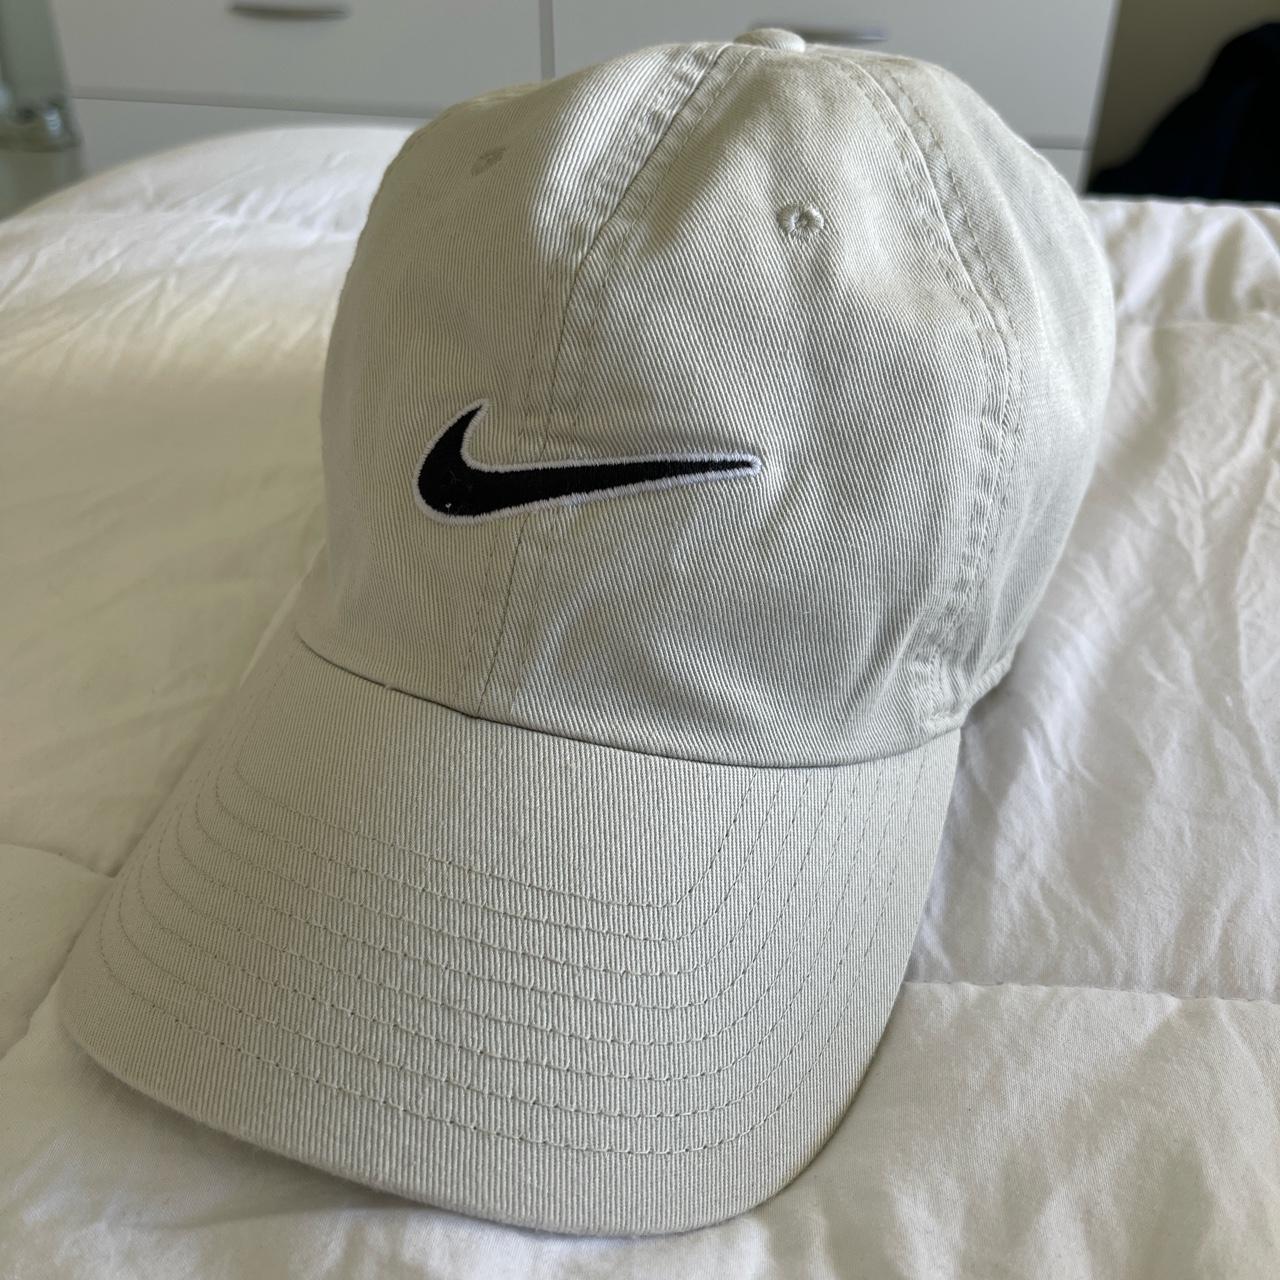 Nike Women's Hat | Depop